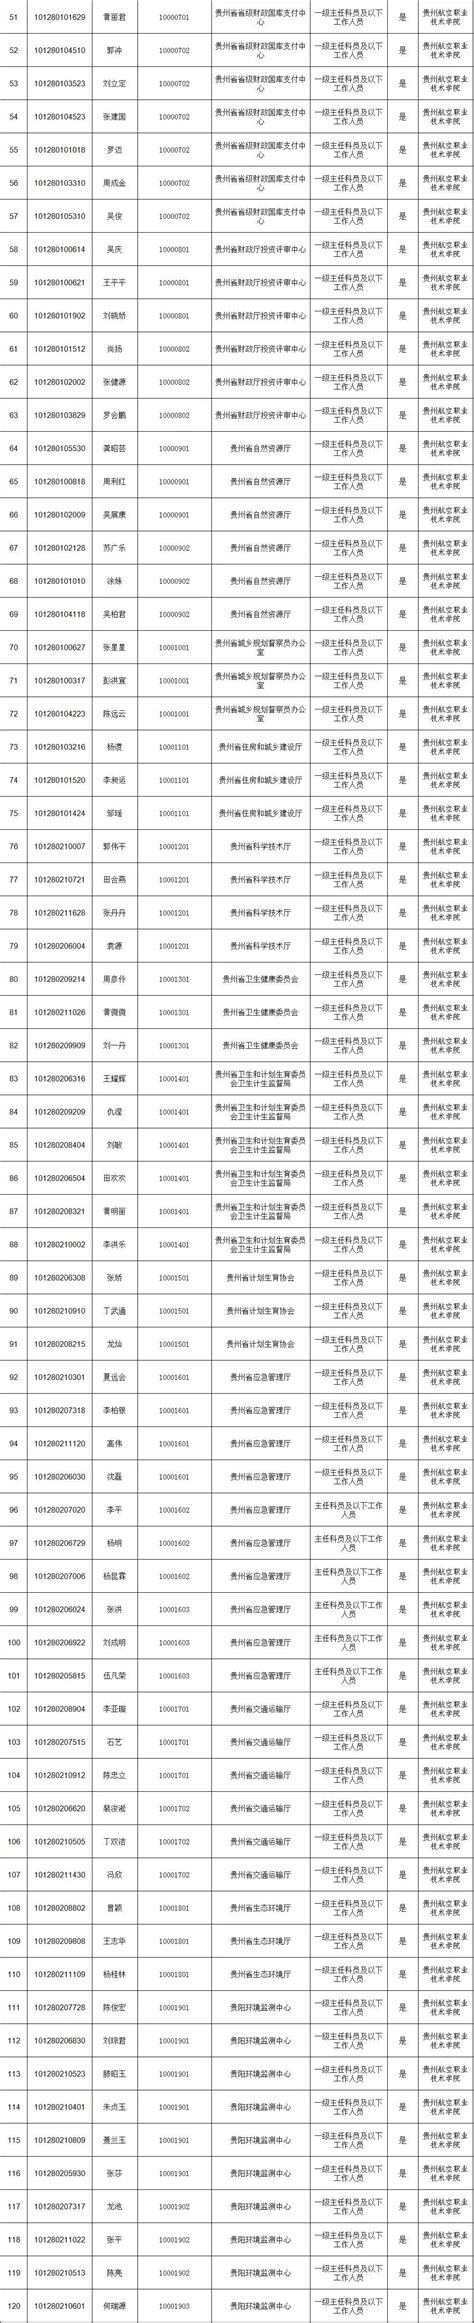 贵州省2021年省直及垂管系统招录公务员面试公告（附名单） - 当代先锋网 - 要闻